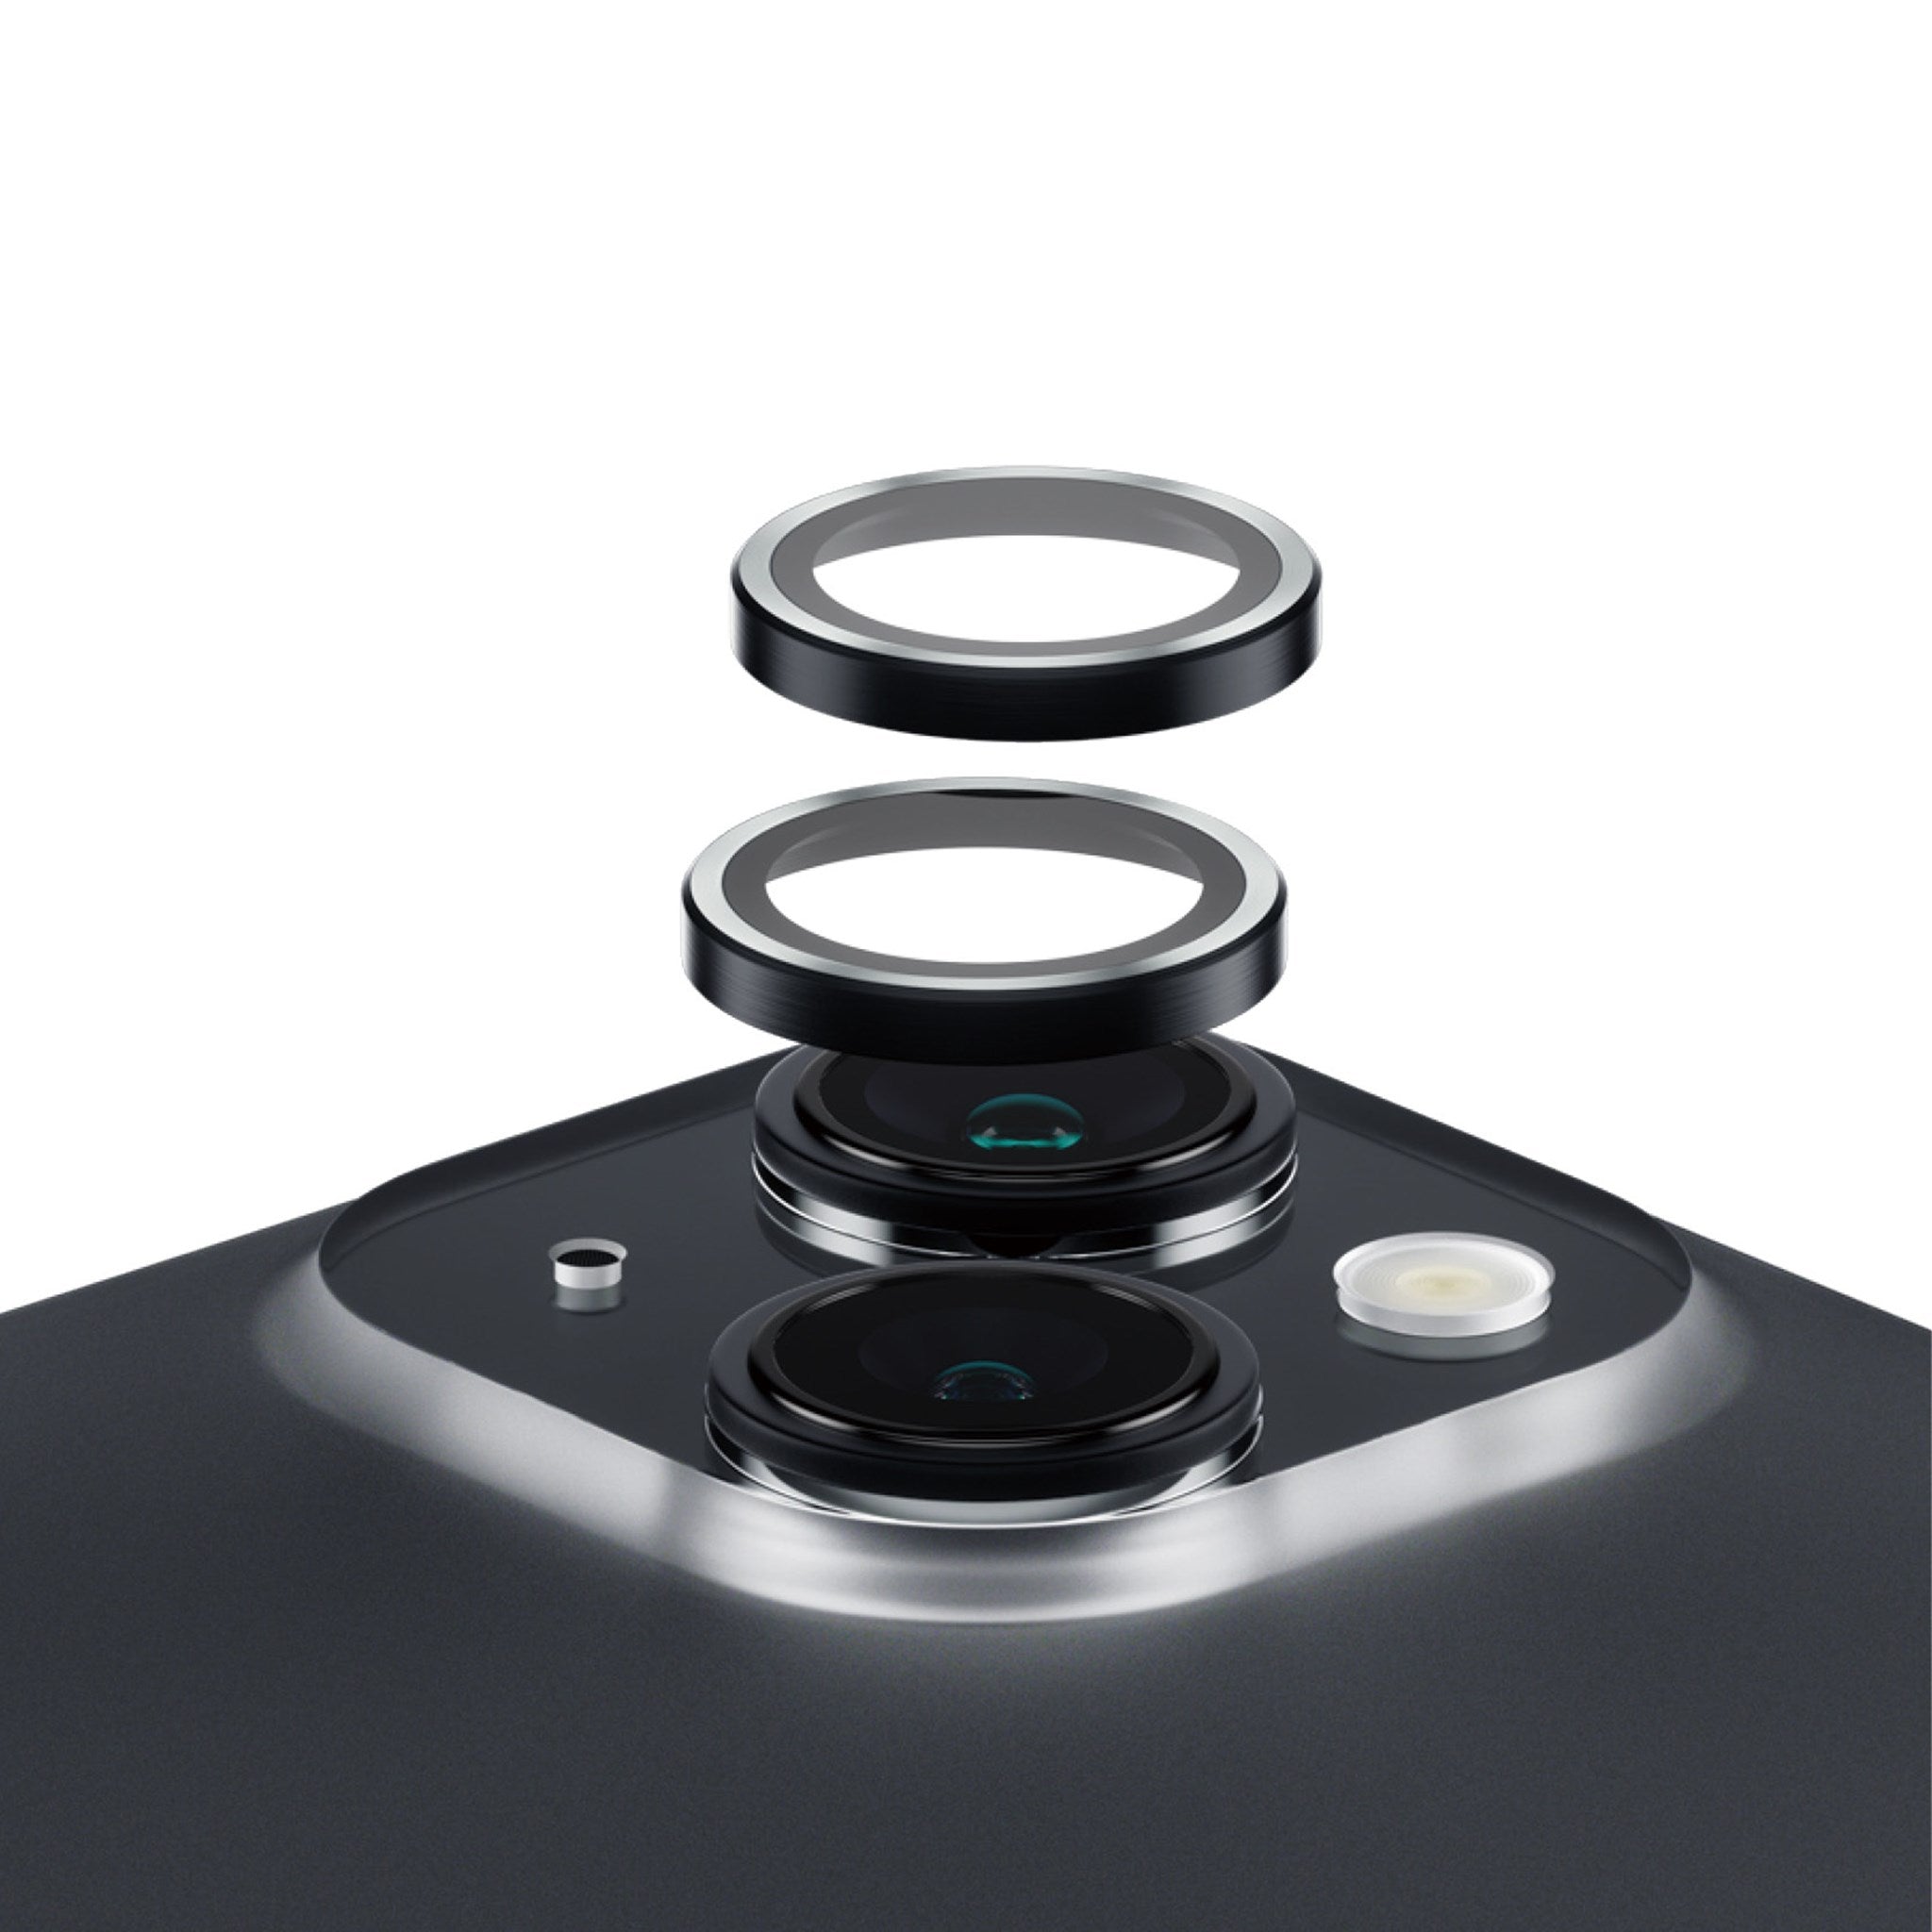 PanzerGlass • Protection de caméra iPhone 15 et 15 Plus